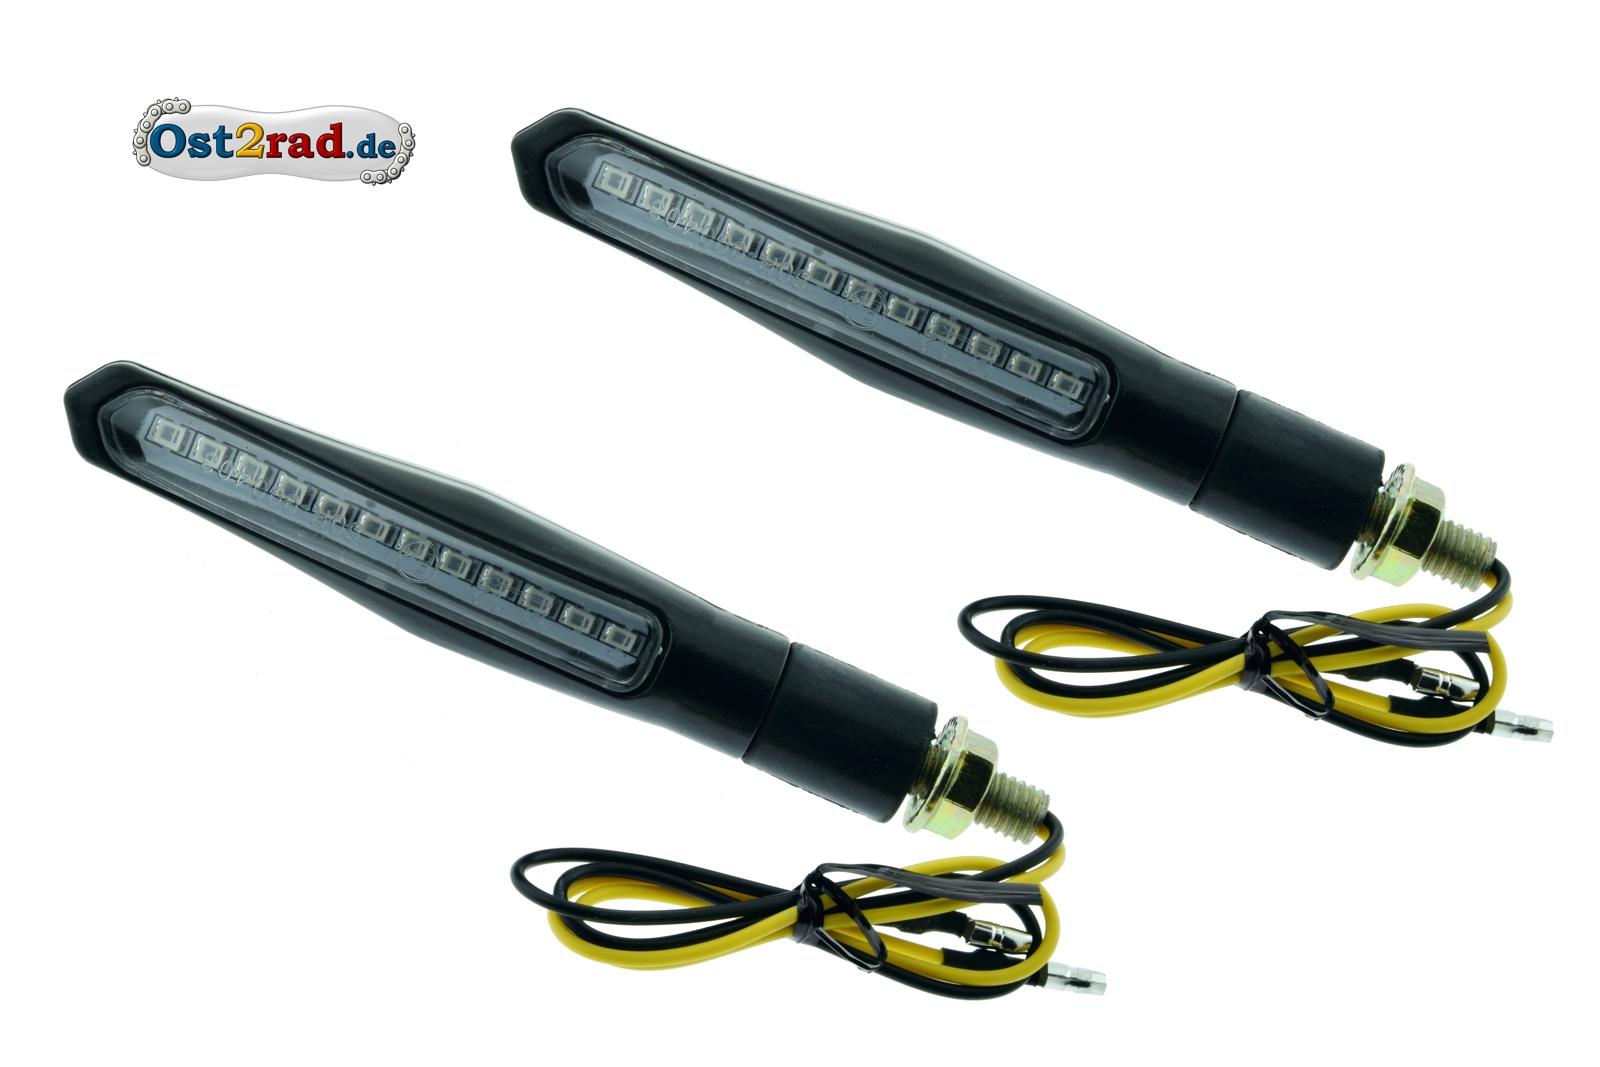 Gute & Günstige LED Blinker, S50 Rücklicht, Simson S51